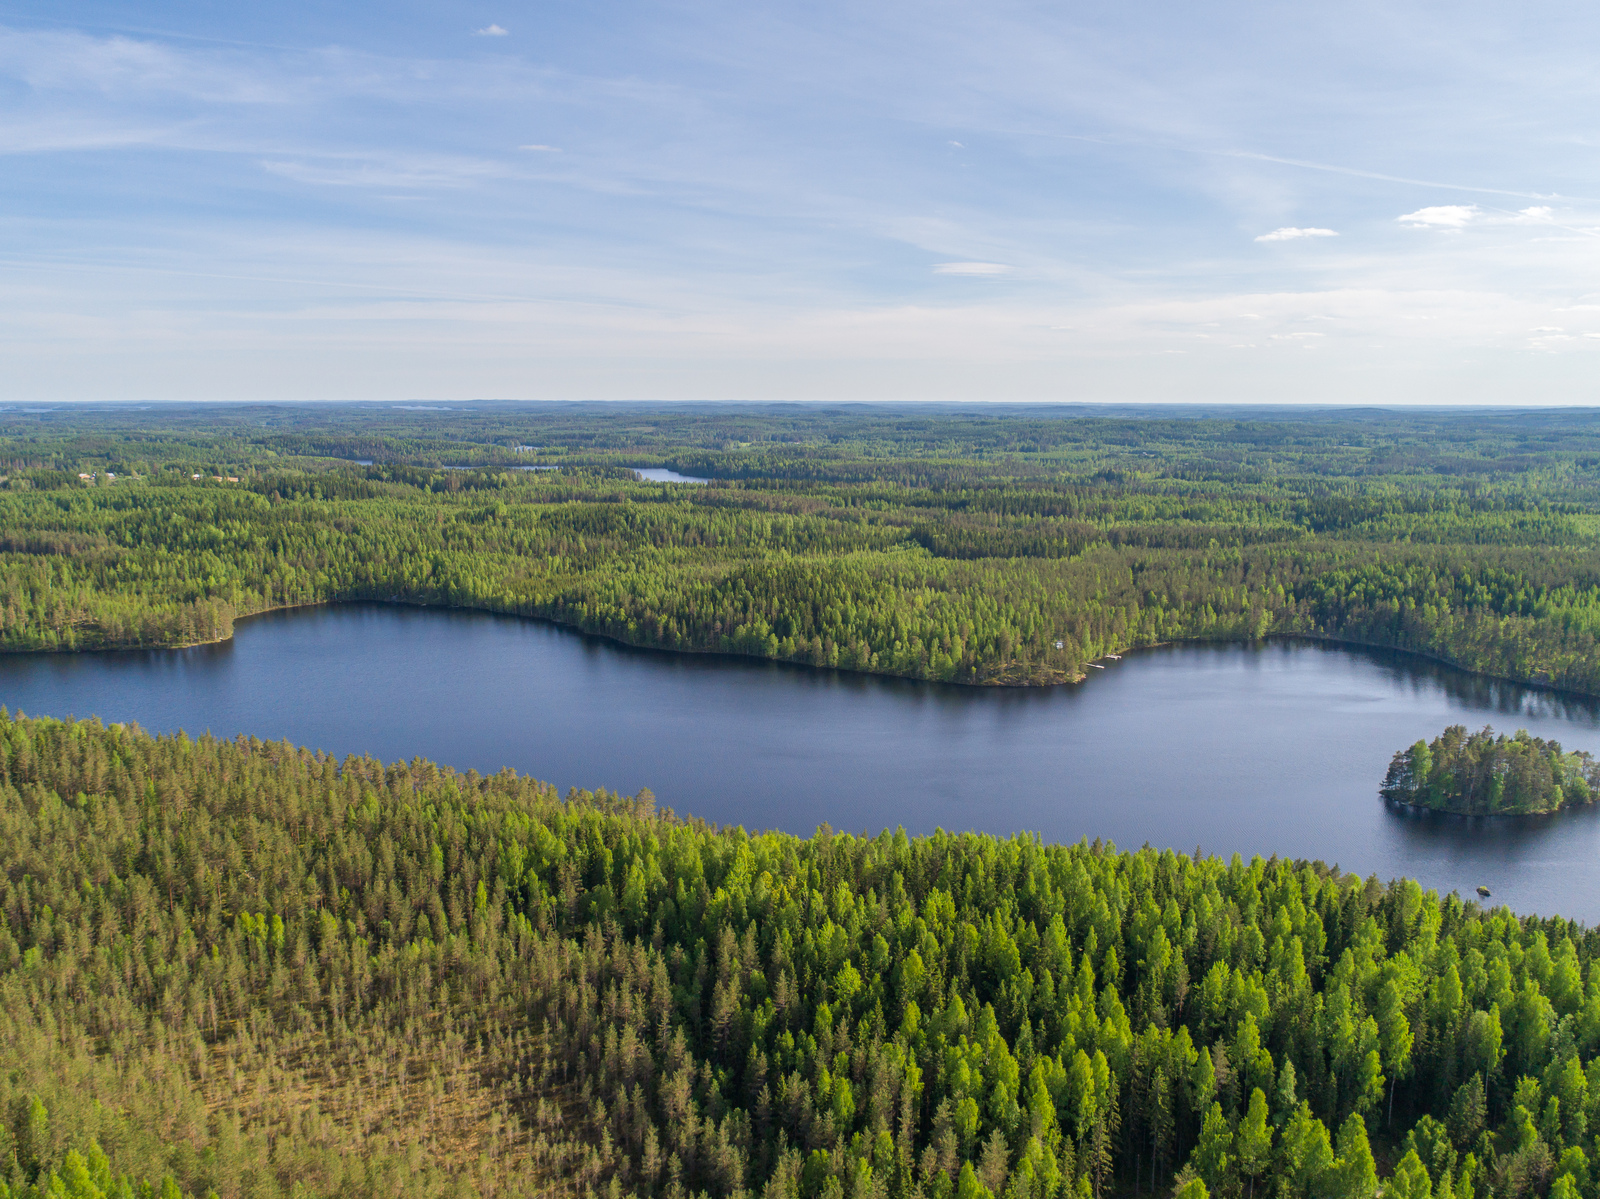 Kesämaisemassa metsät reunustavat pitkulaista järveä, jossa on saari. Ilmakuva.